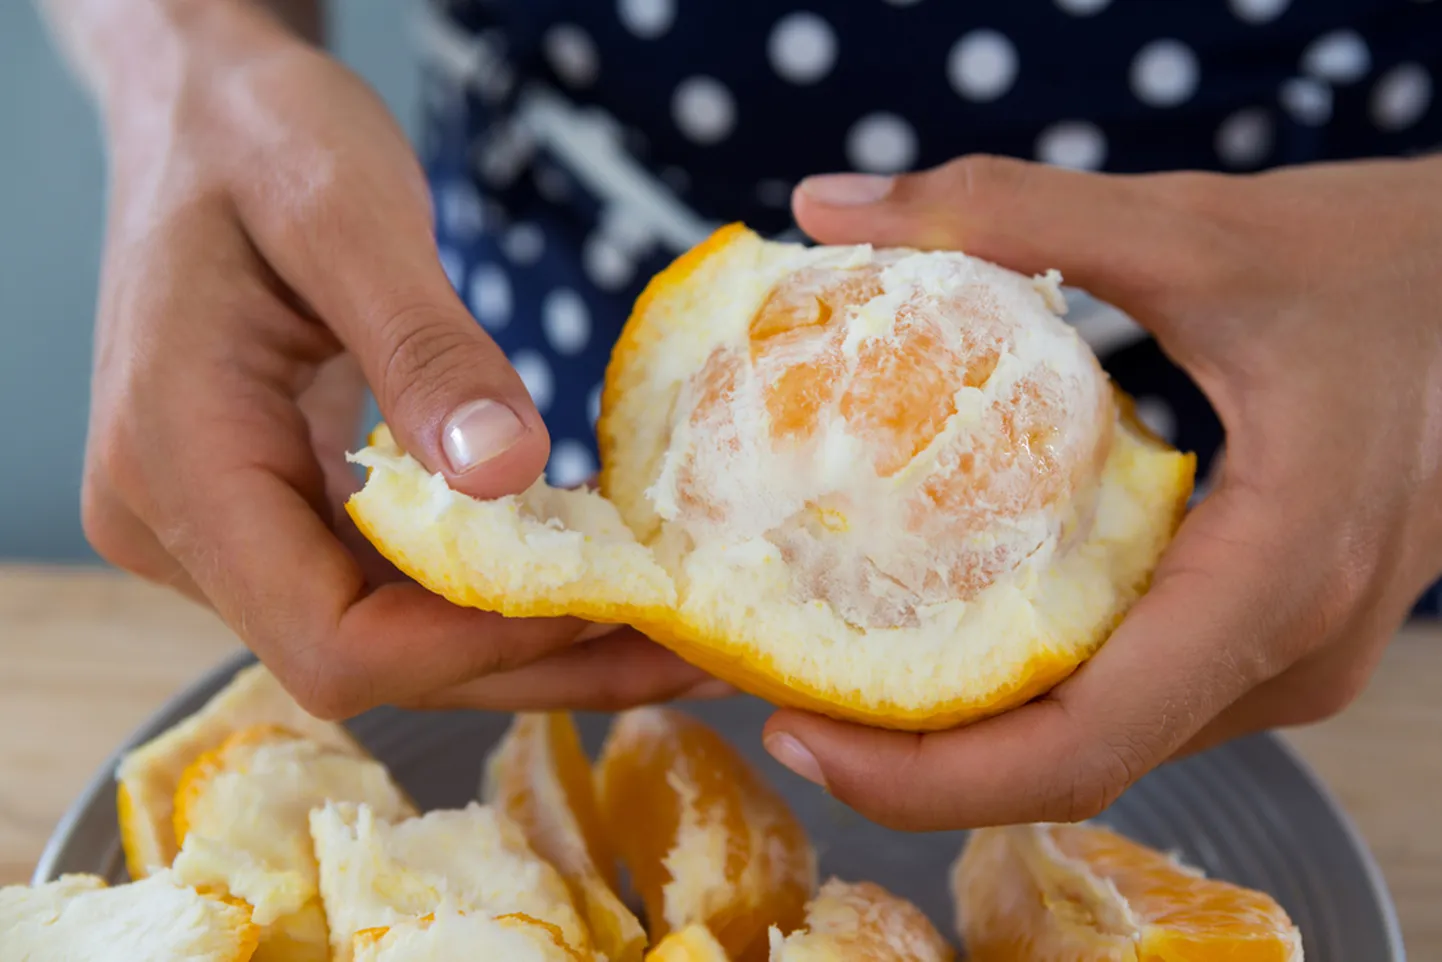 Millal sa viimati kallimale apelsini koorisid?